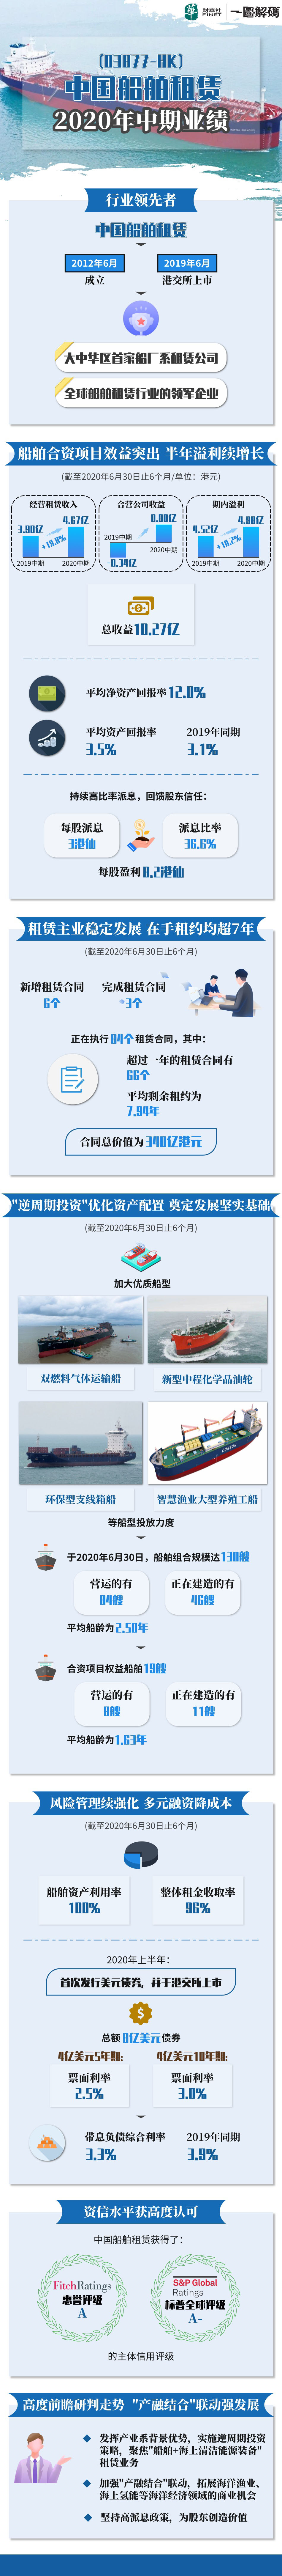 中國船舶租賃 2020年中期業績